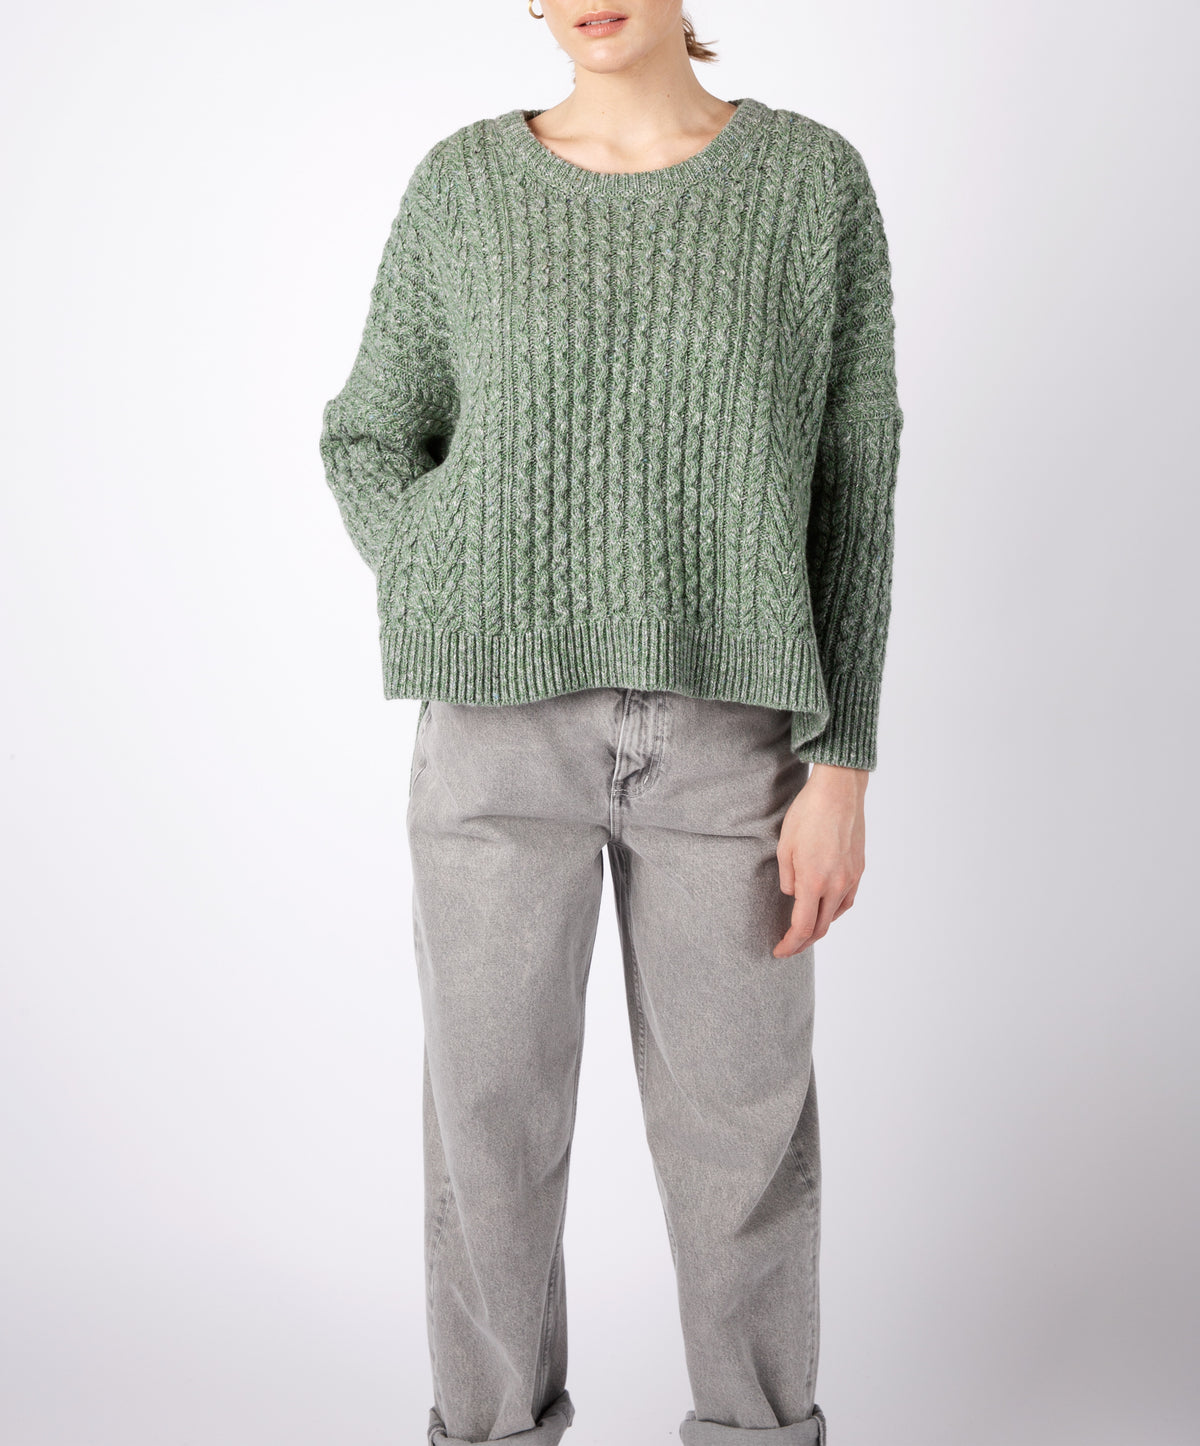 IrelandsEye Knitwear 'Sorrell' Cropped Aran Sweater Apple